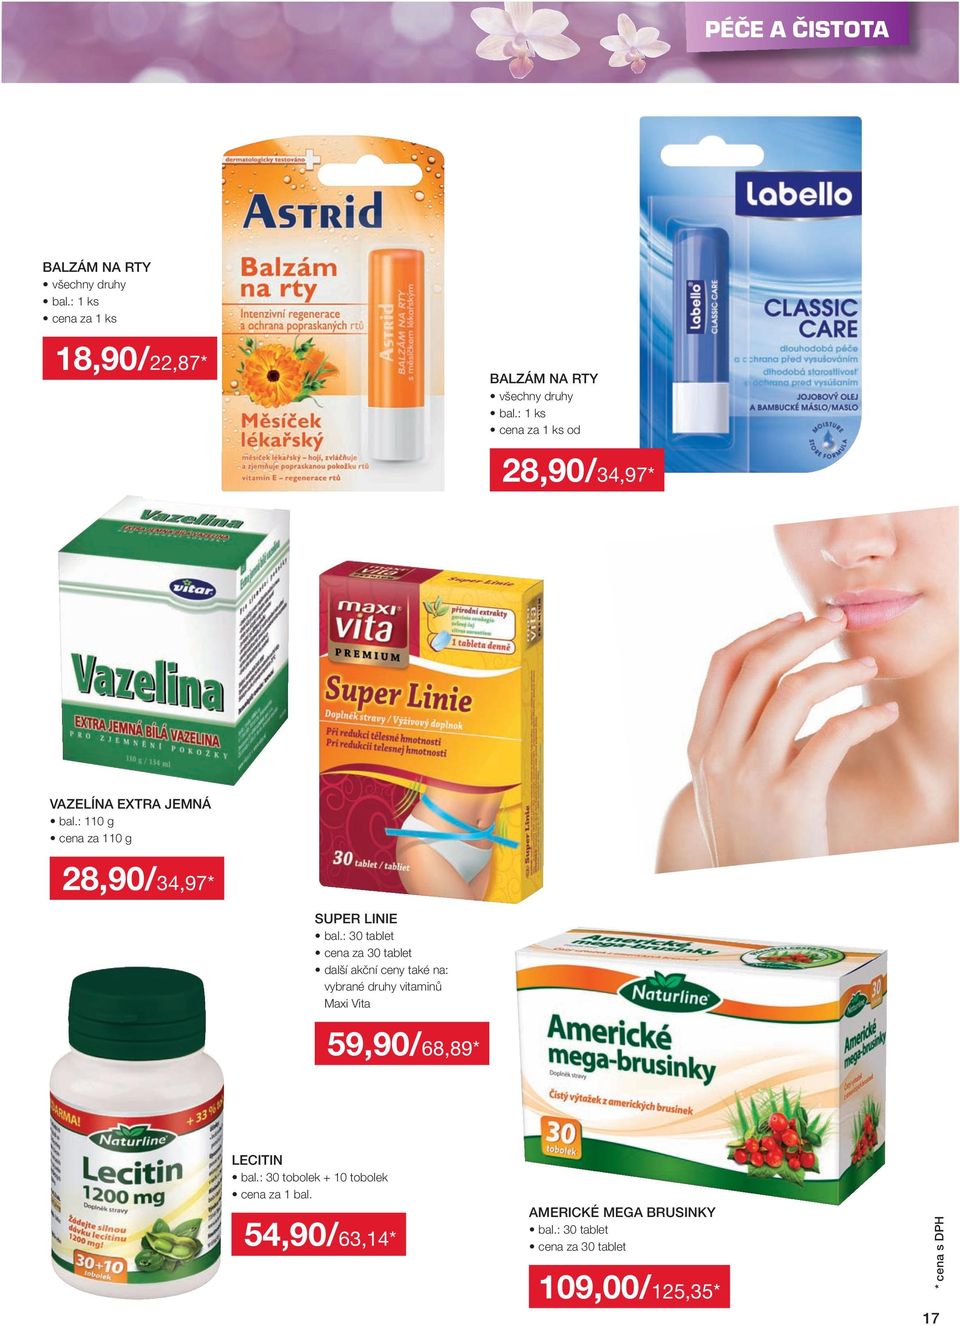 : 30 tablet cena za 30 tablet další akční ceny také na: vybrané druhy vitaminů Maxi Vita 59,90 / 68,89 *